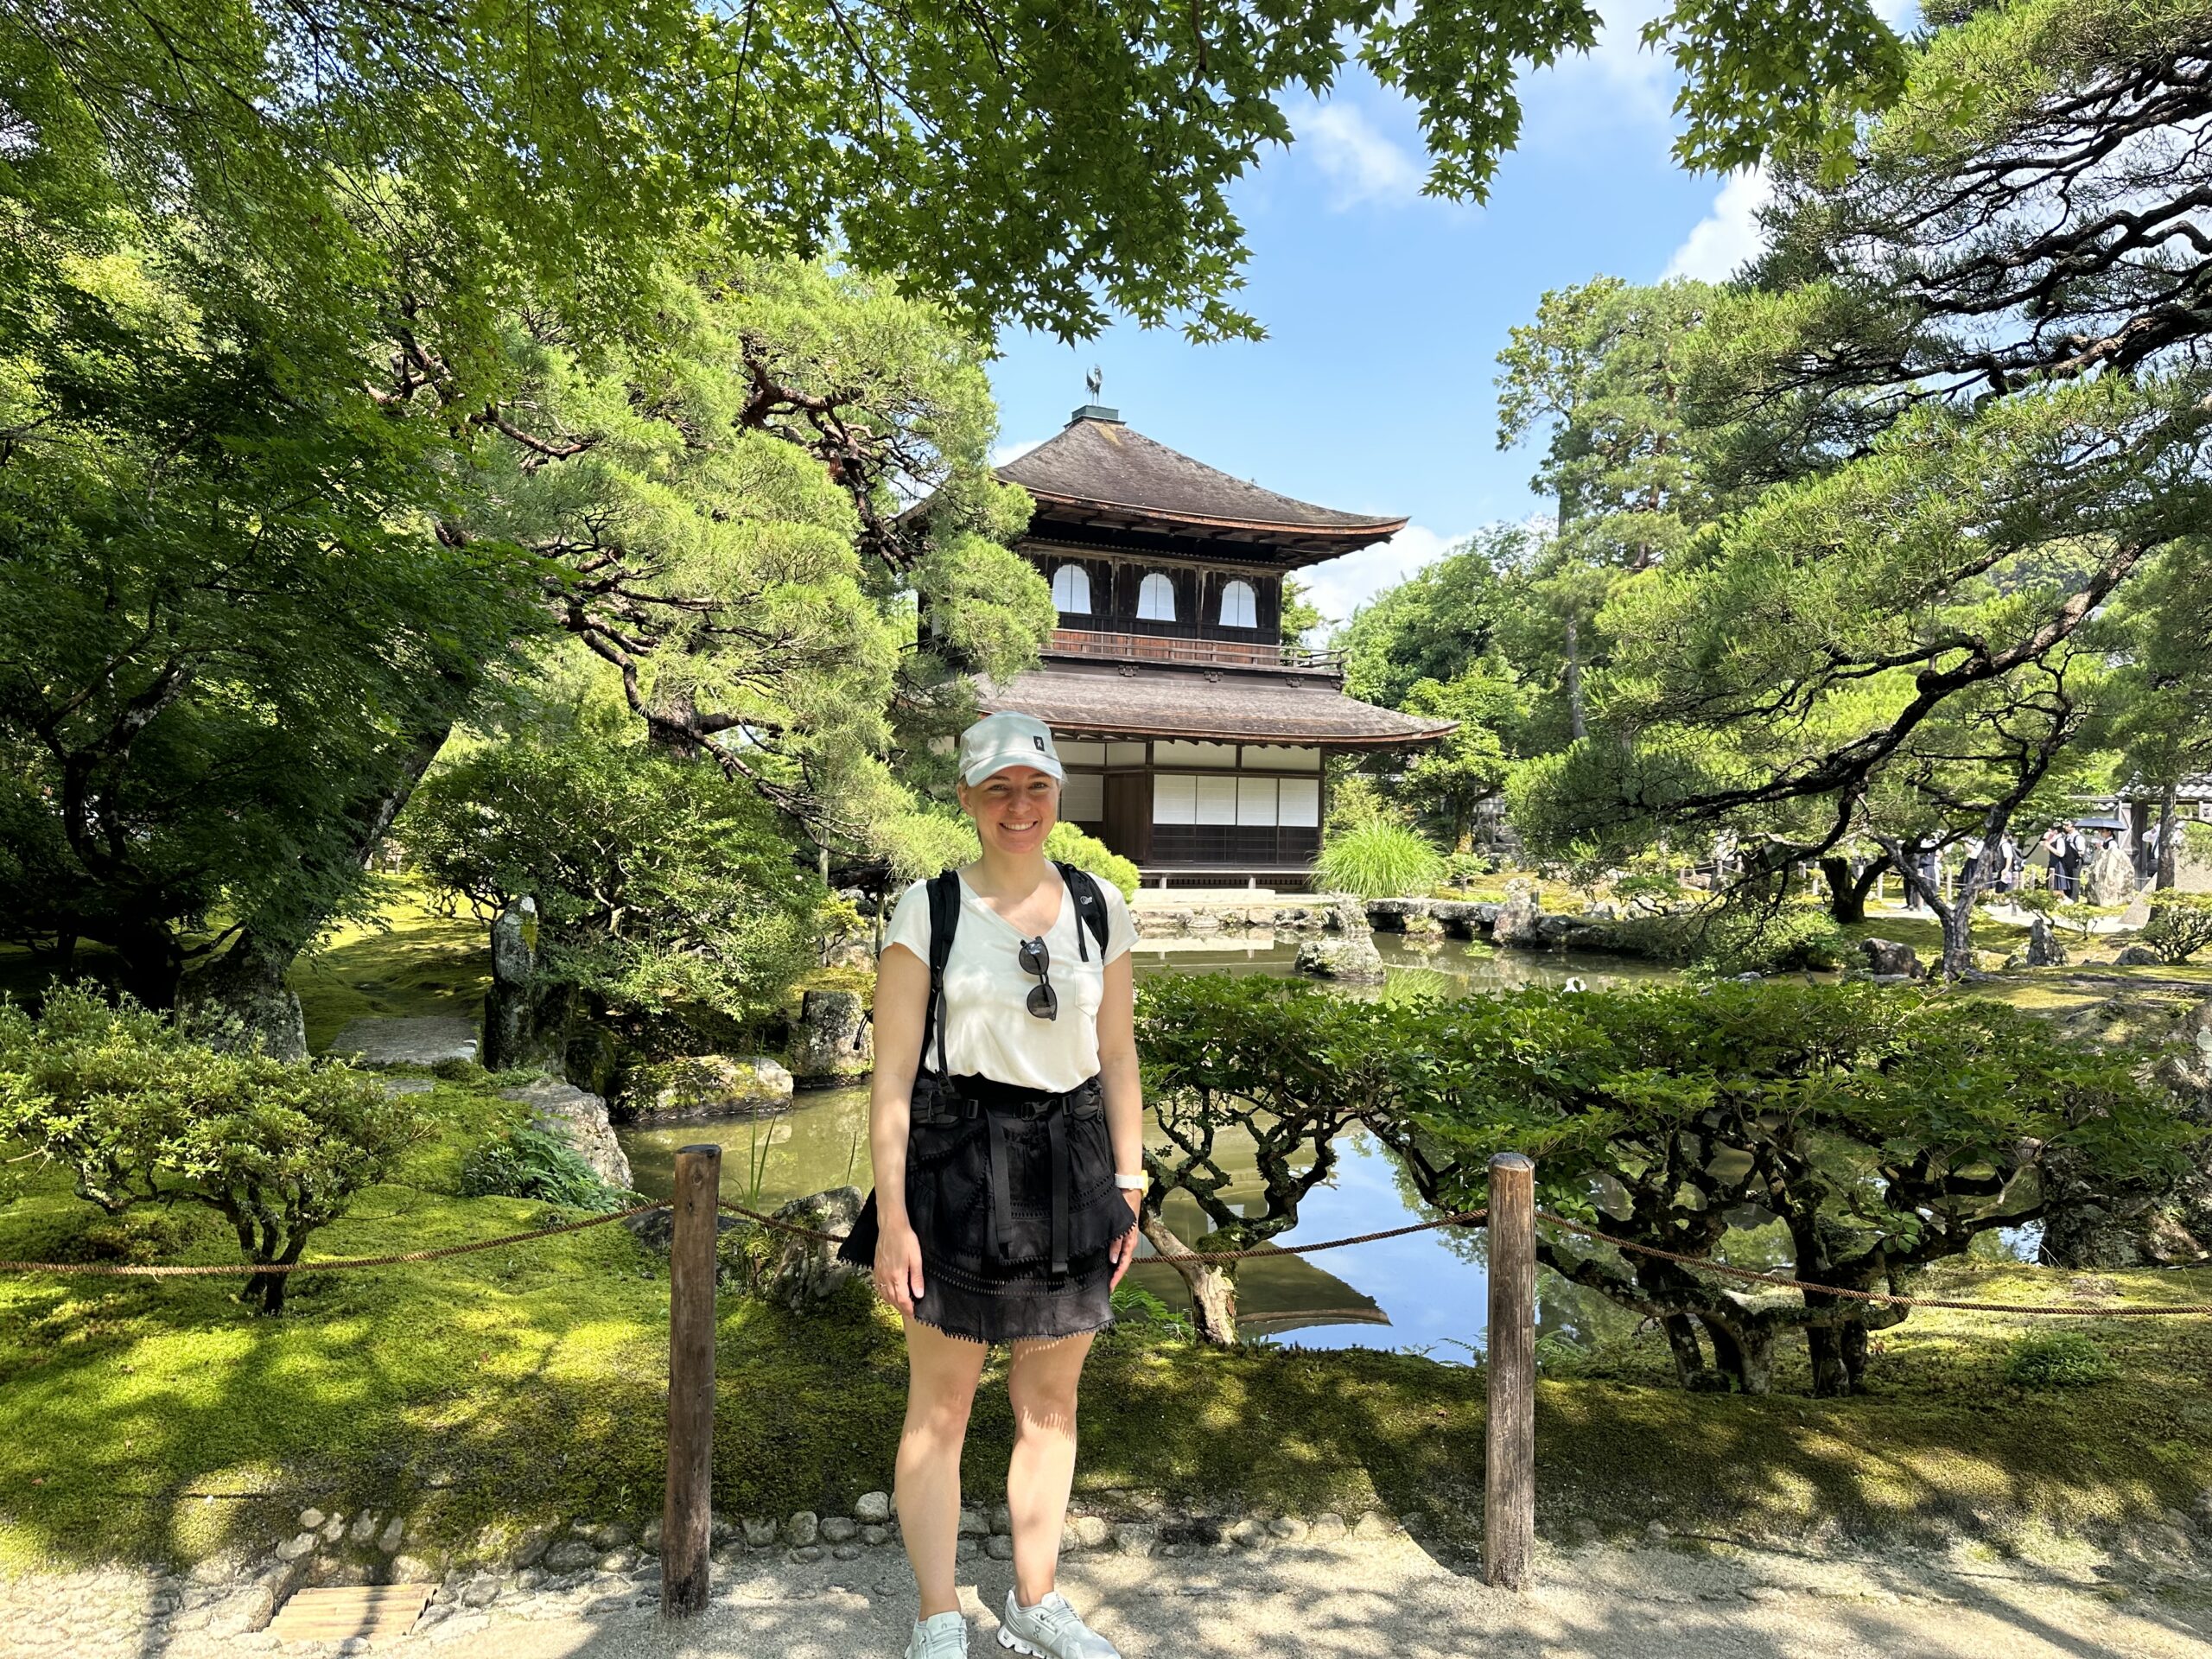 Me in front of Ginkaku-ji temple.